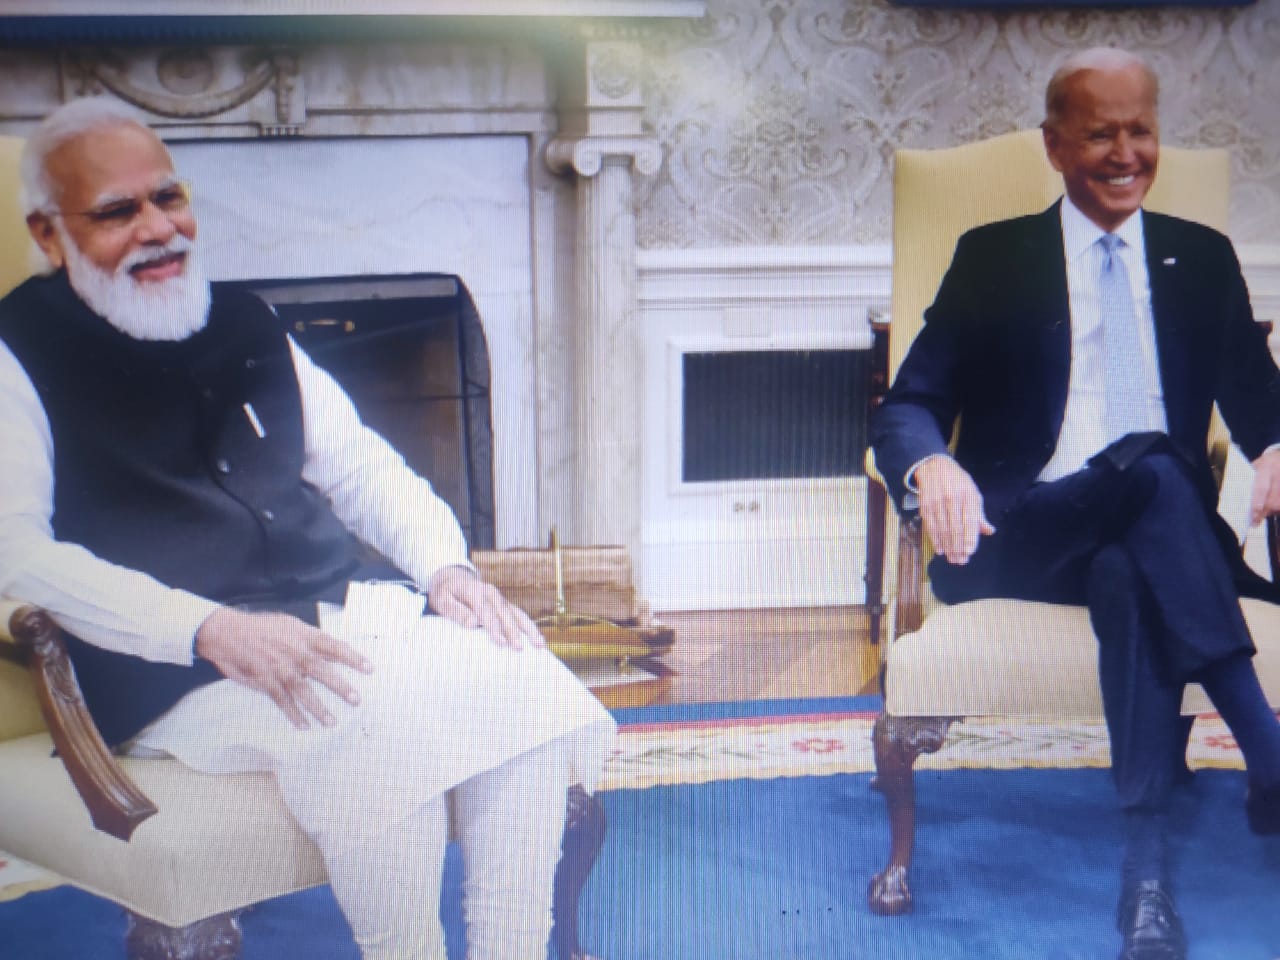 प्रधानमंत्री मोदी और राष्ट्रपति बाइडेन ने मजबूत एवं परिवर्तनकारी संबंधों पर सार्थक चर्चा की